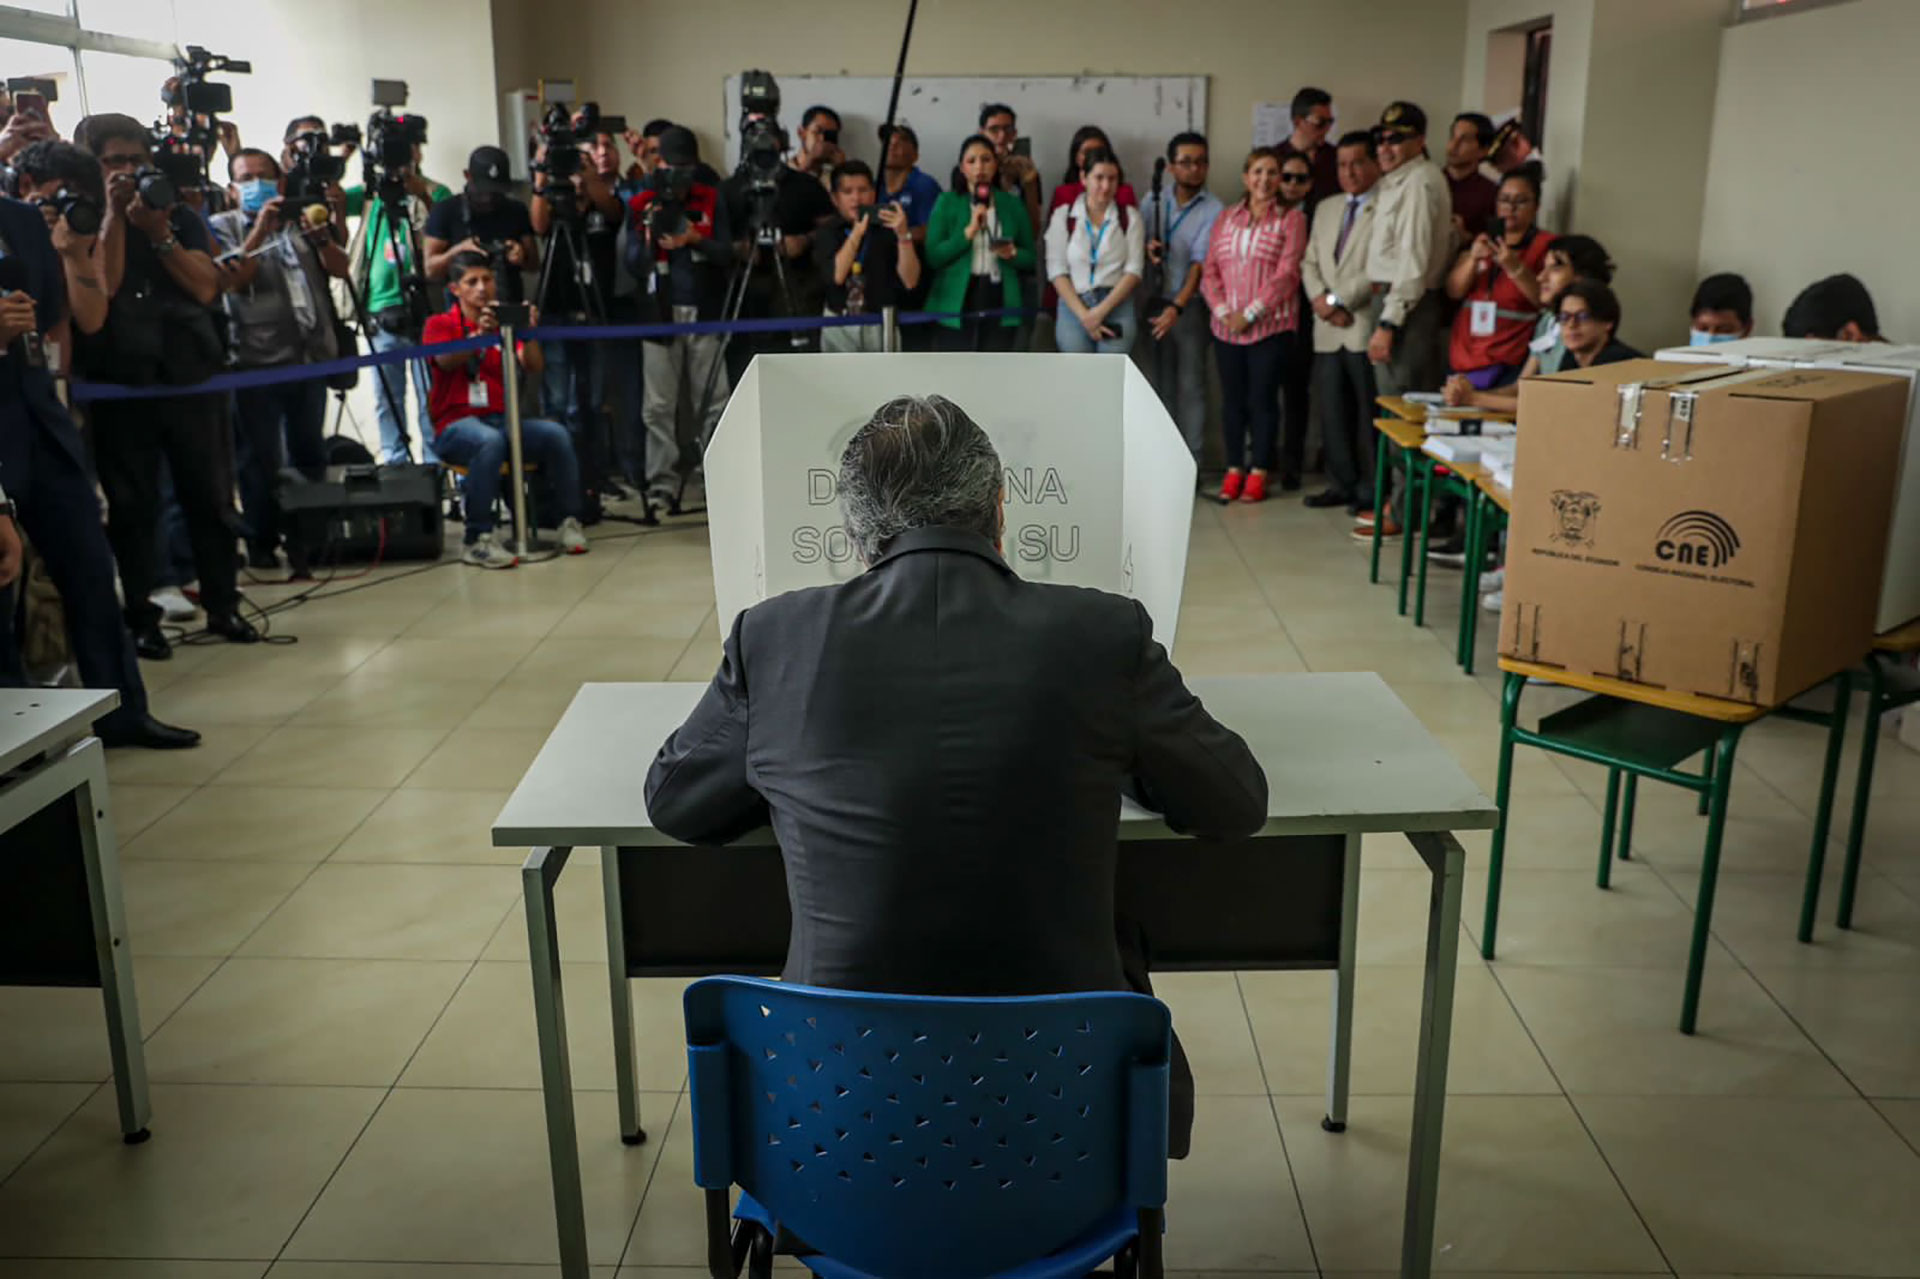 El presidente Guillermo Lasso votó a favor del Sí en el referéndum. Los esfuerzos gubernamentales no le alcanzaron para legitimar políticamente a su gobierno